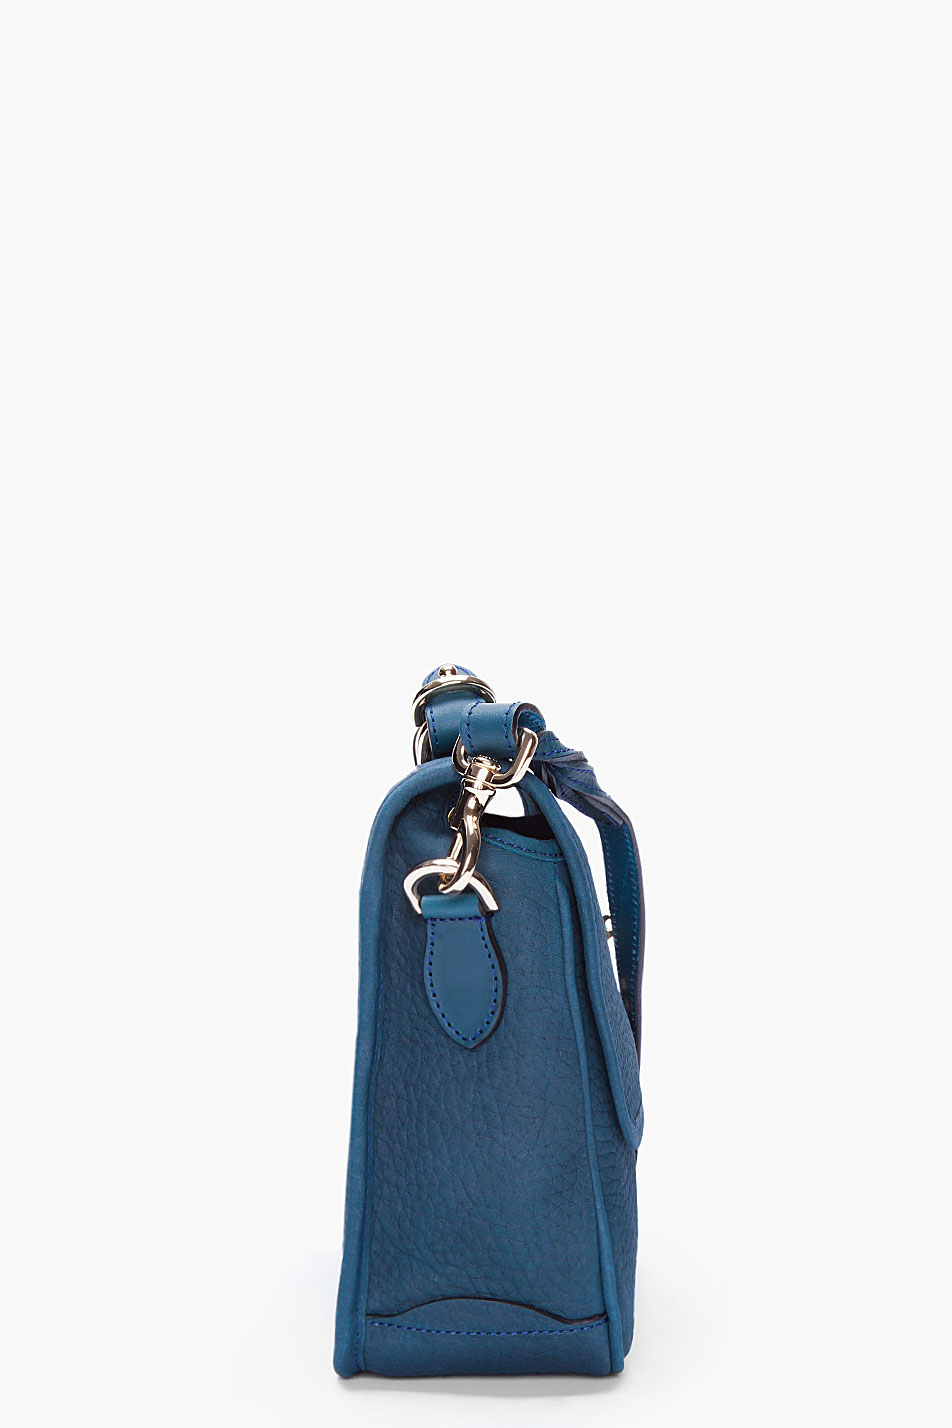 Mulberry Petrol Bryn Shoulder Bag in Blue - Lyst